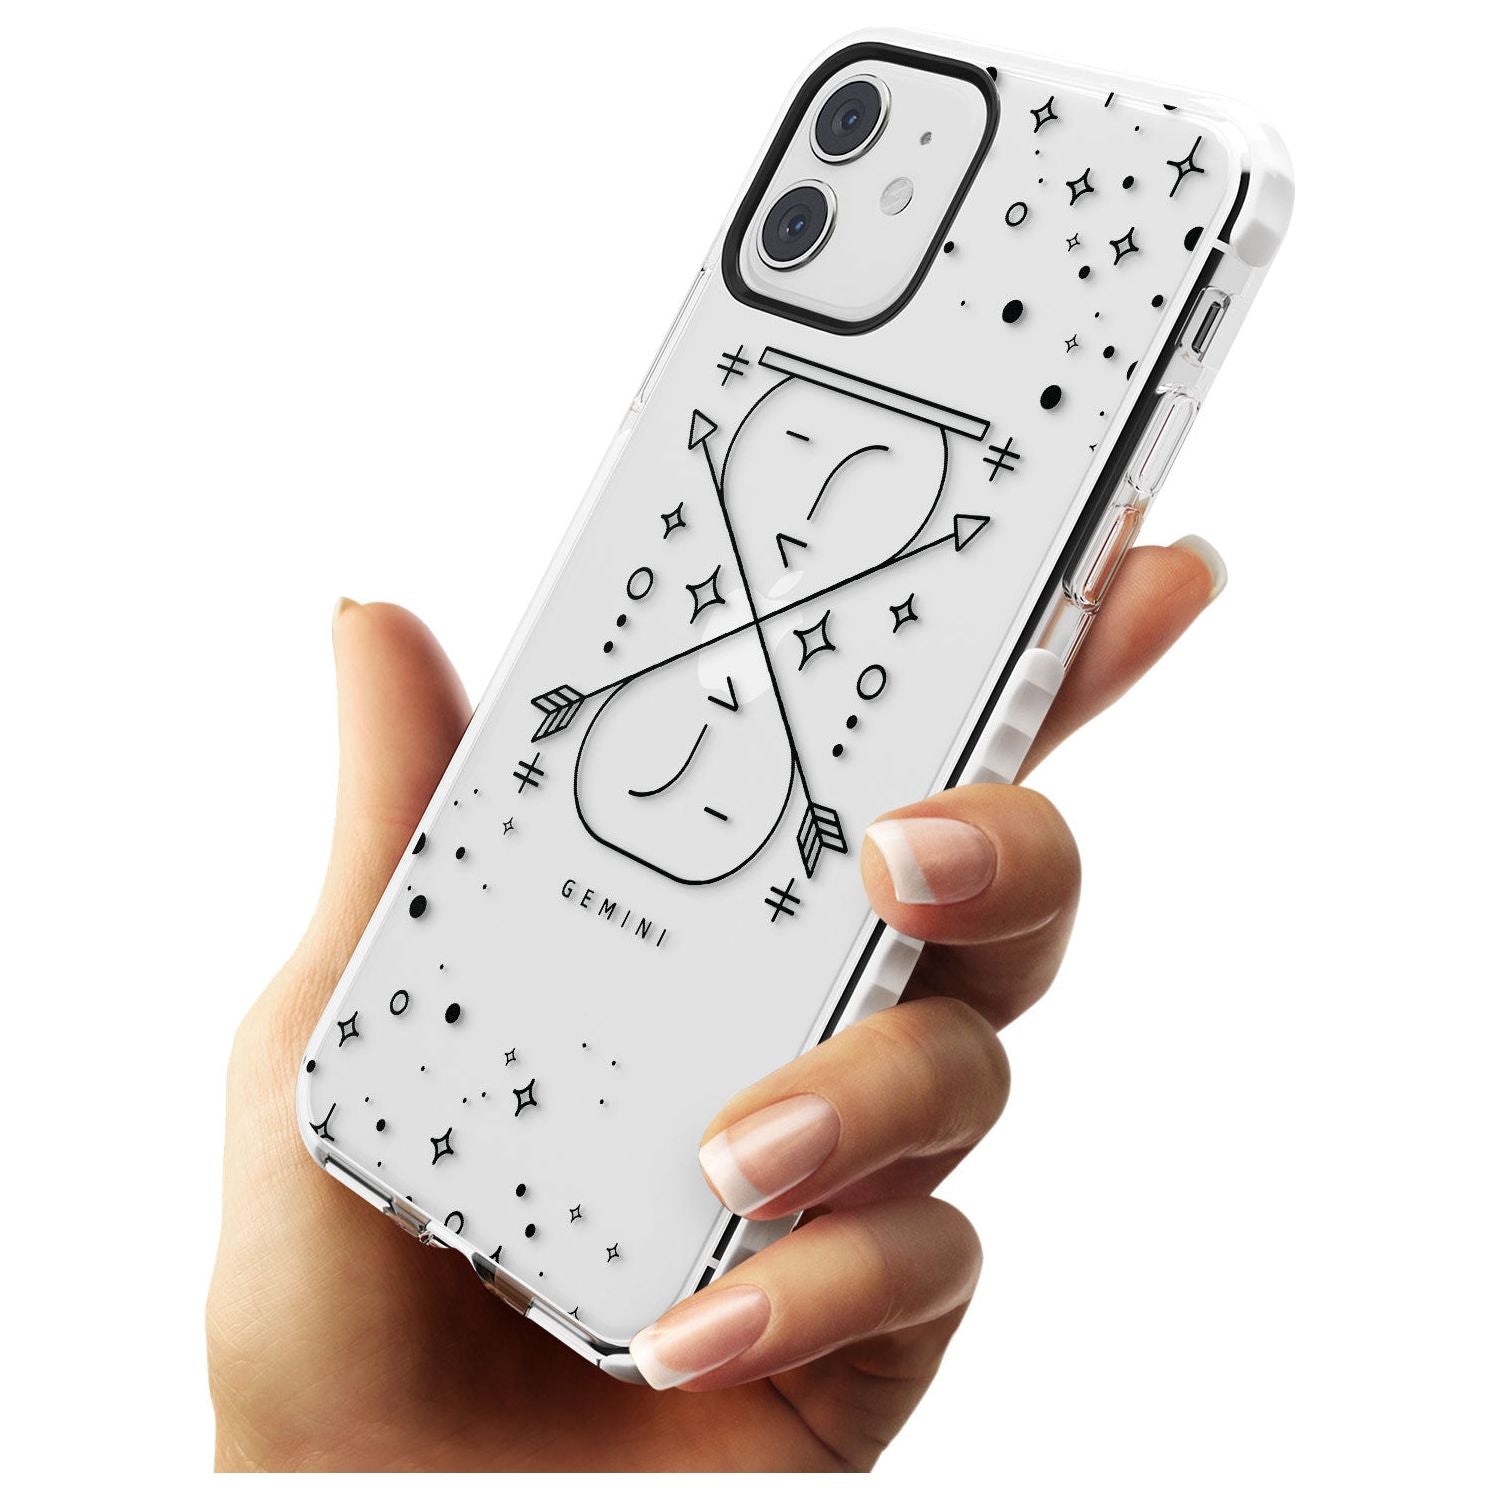 Gemini Emblem - Transparent Design Impact Phone Case for iPhone 11